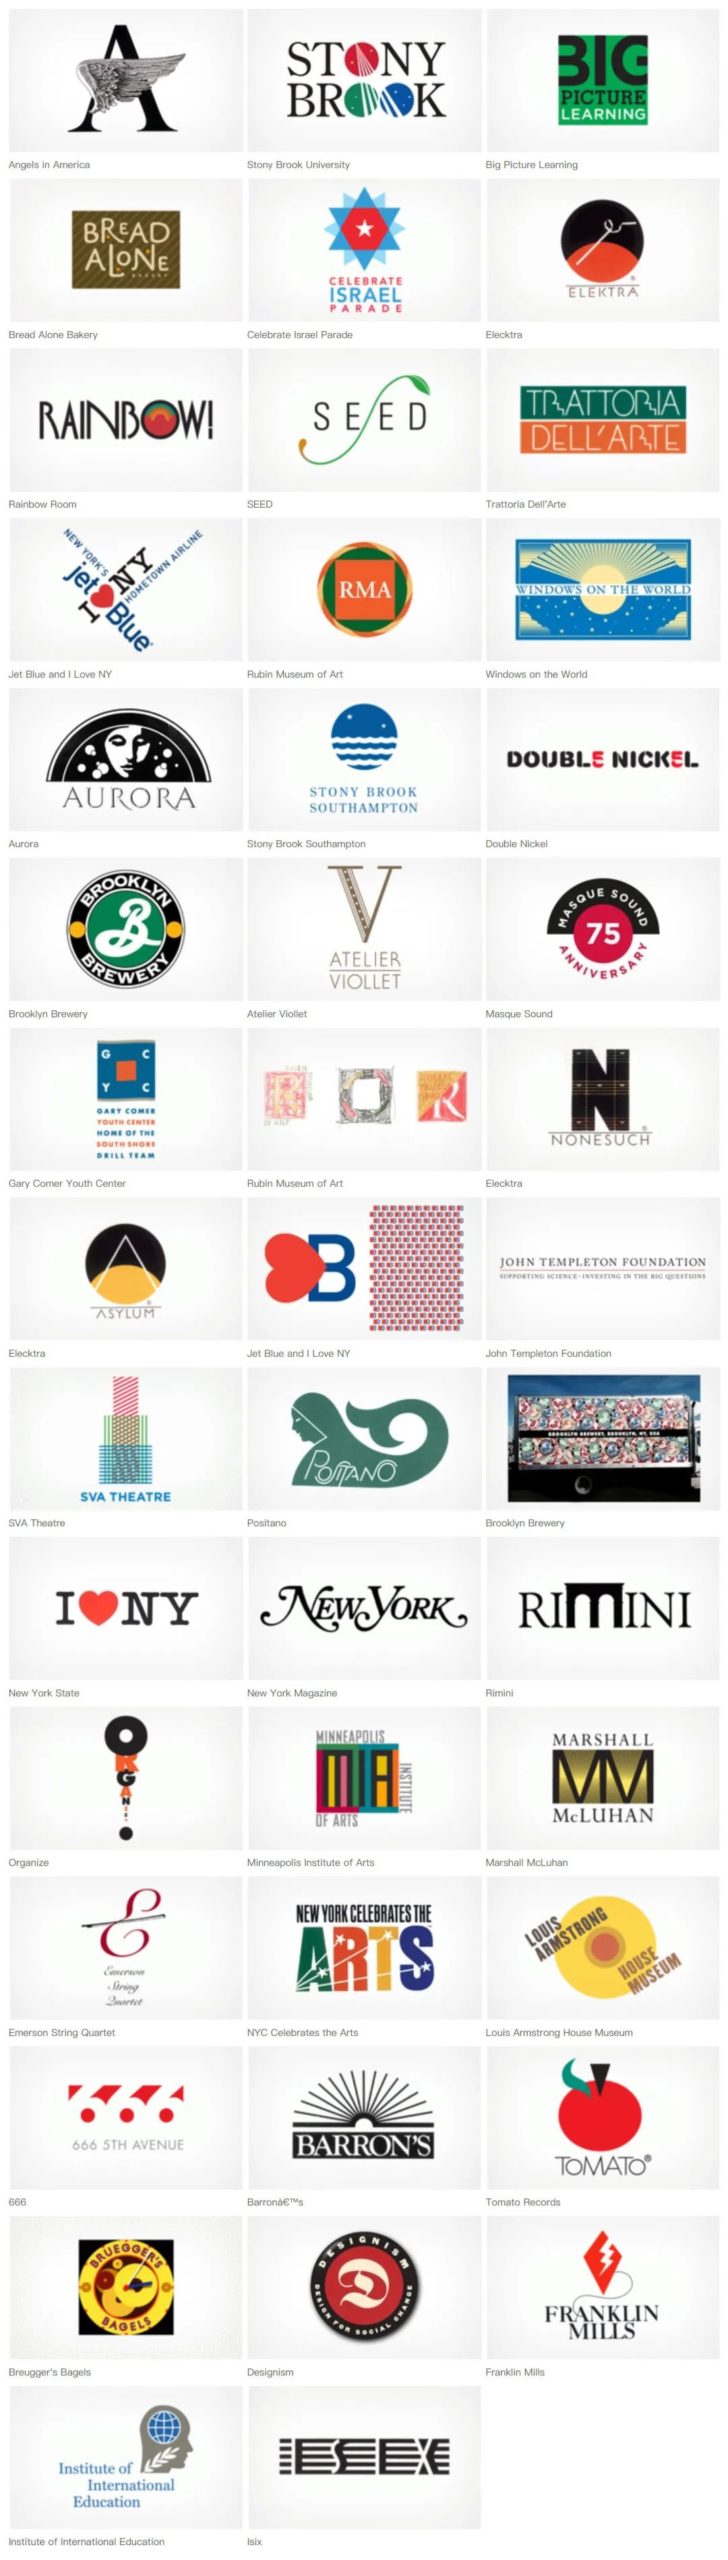 世界级符号「I love NY」设计师 Milton Glaser 在生日当天去世，享年91岁-权戈网络